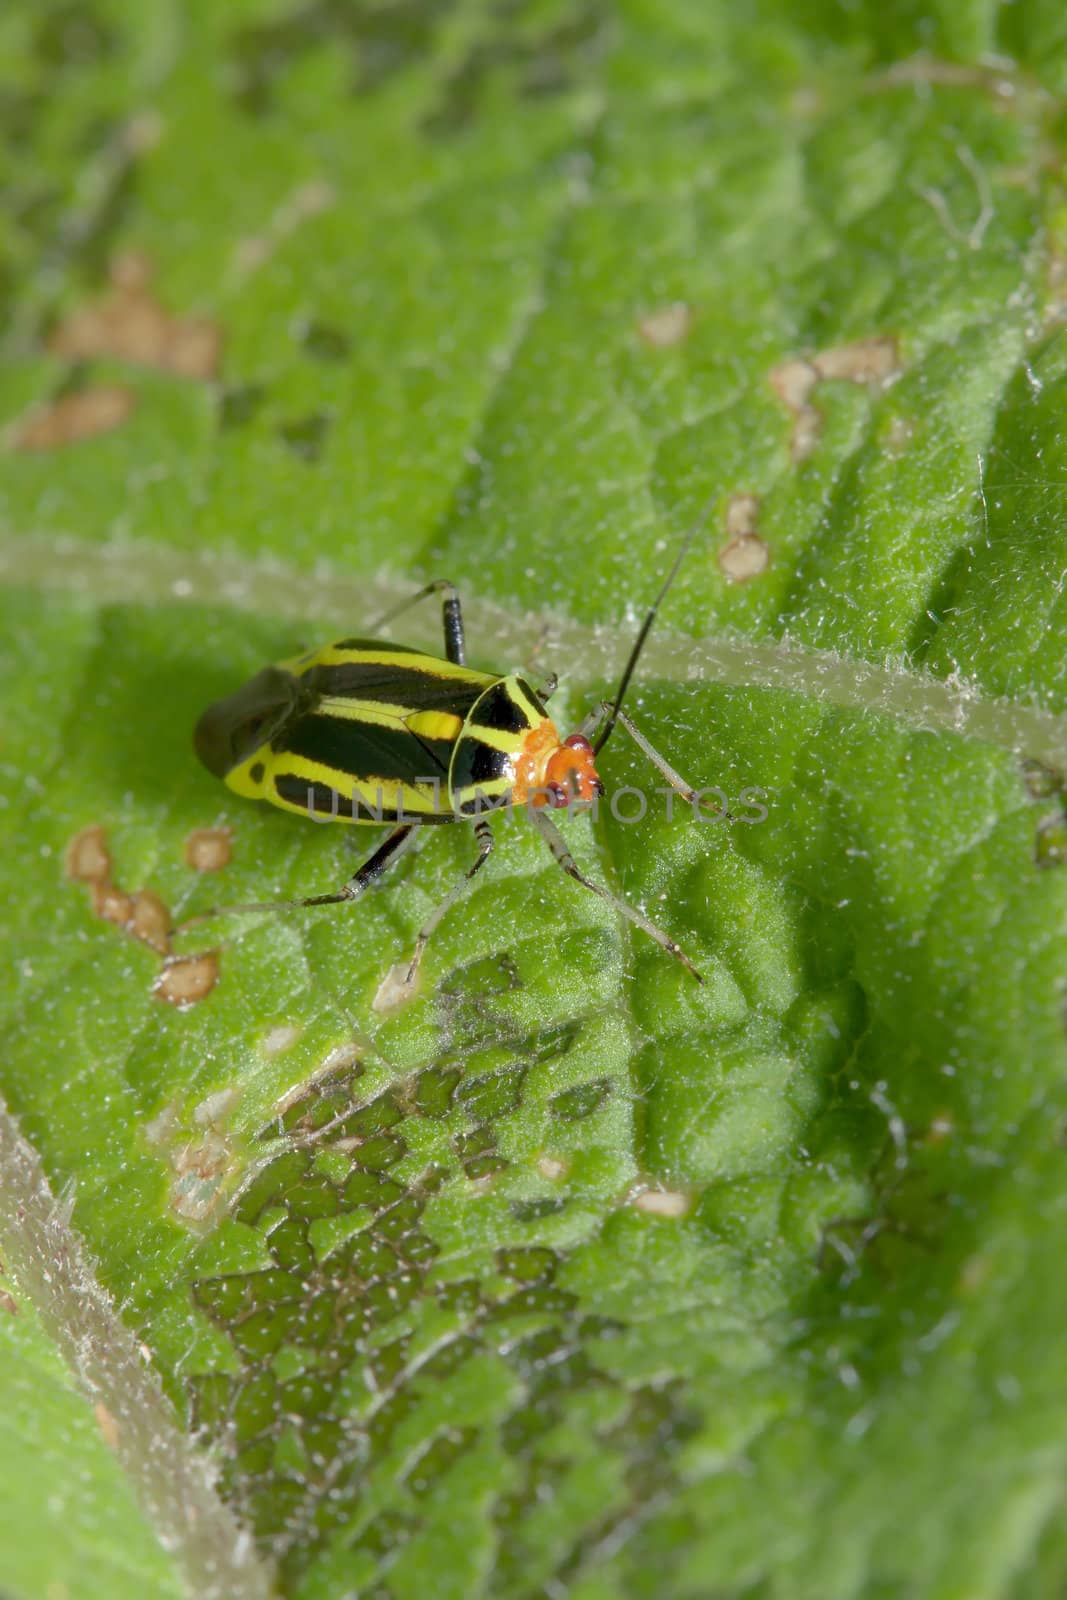 Bug on a Leaf by Coffee999